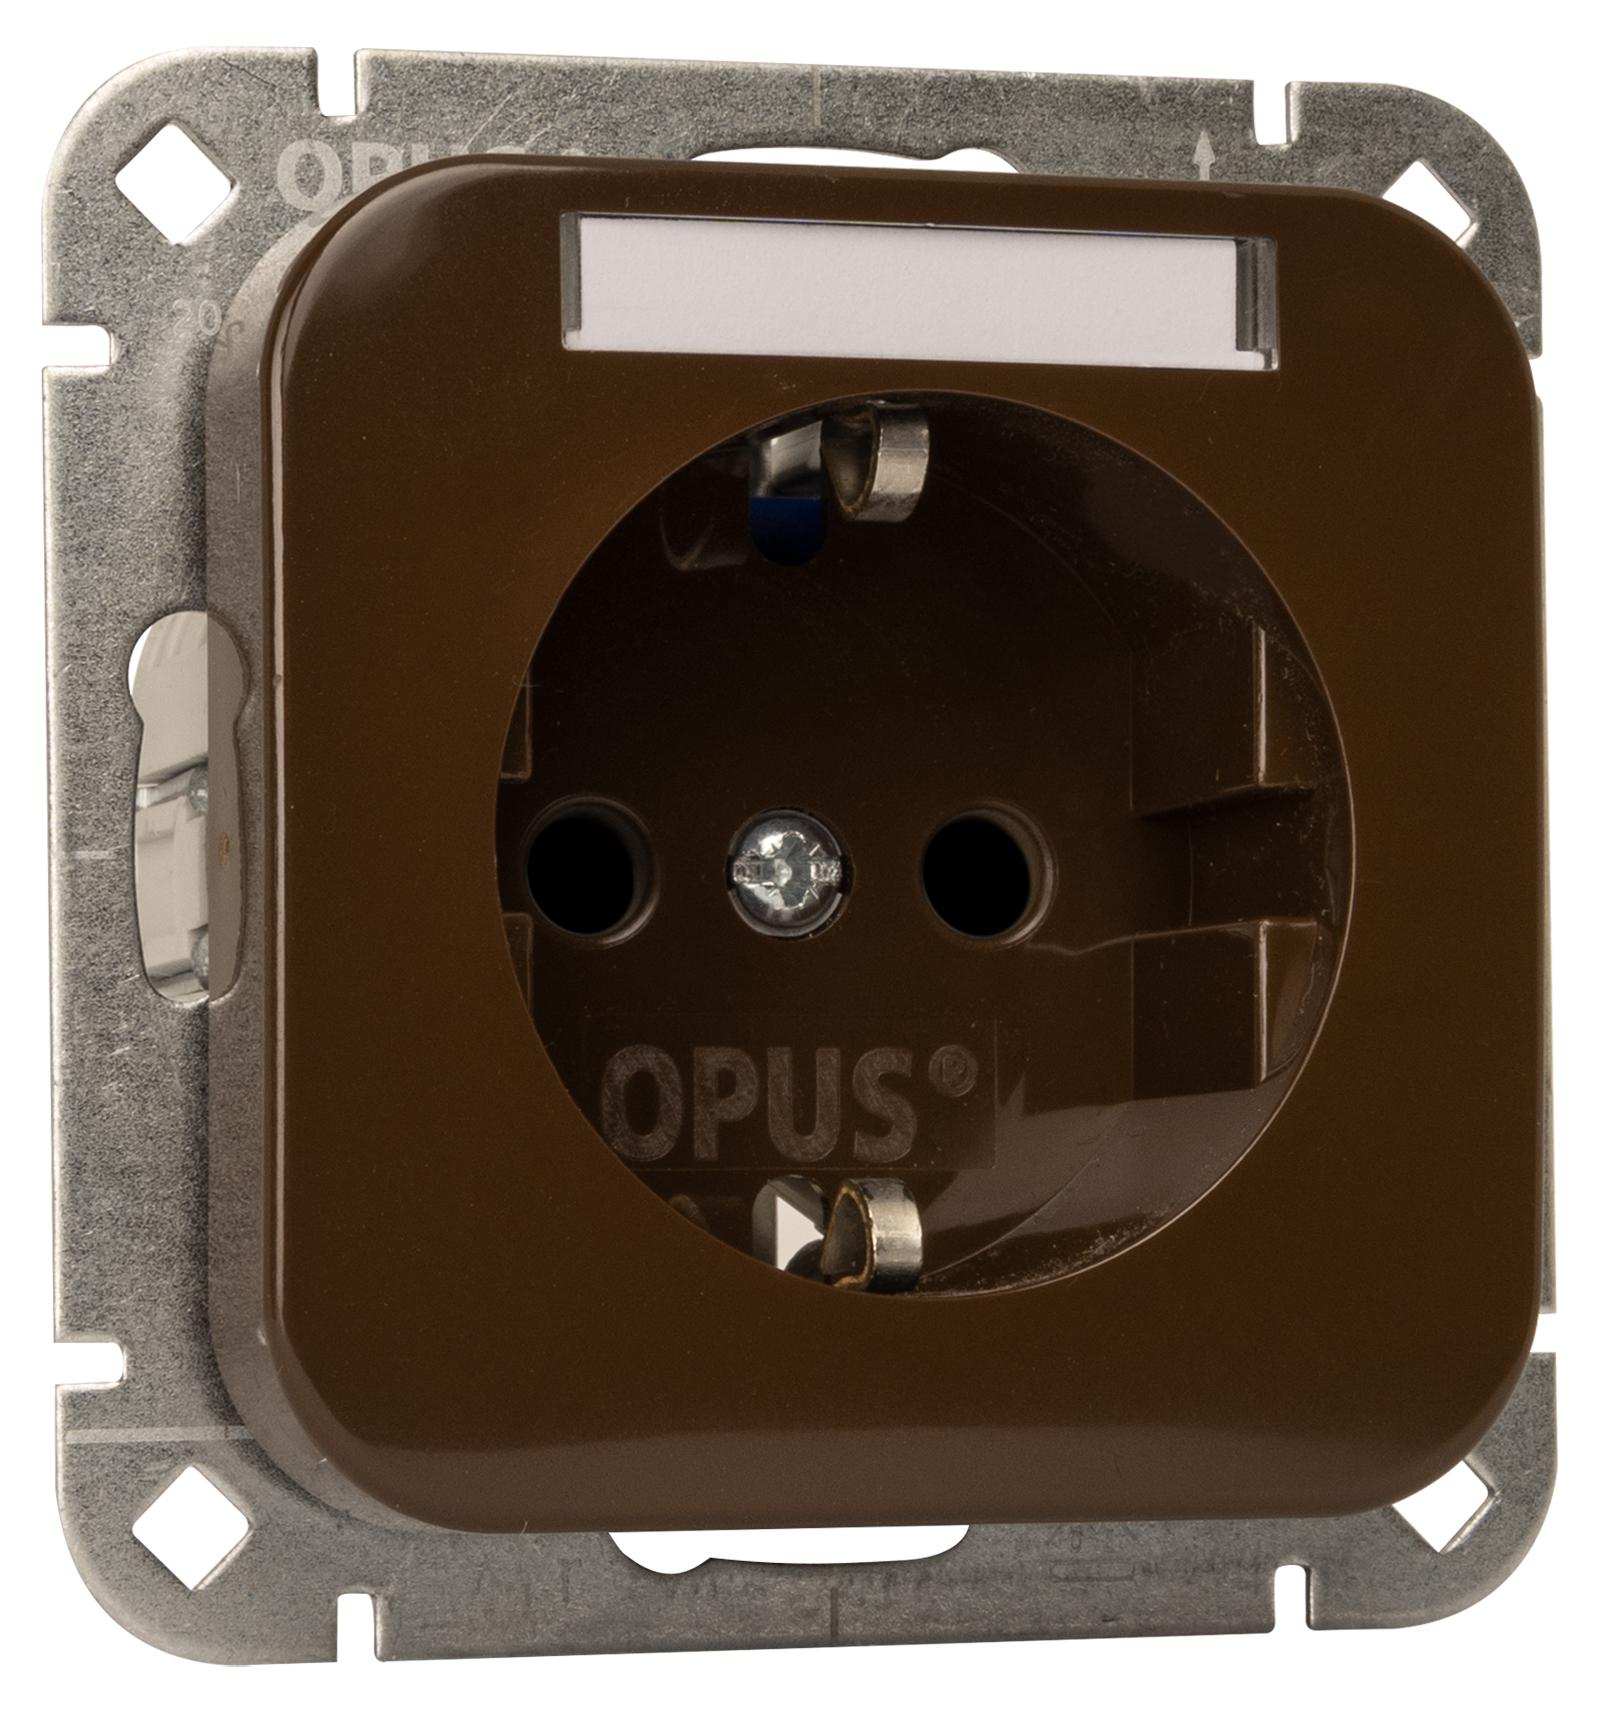 OPUS 1 wandcontactdoos met aardingscontact en labelveld